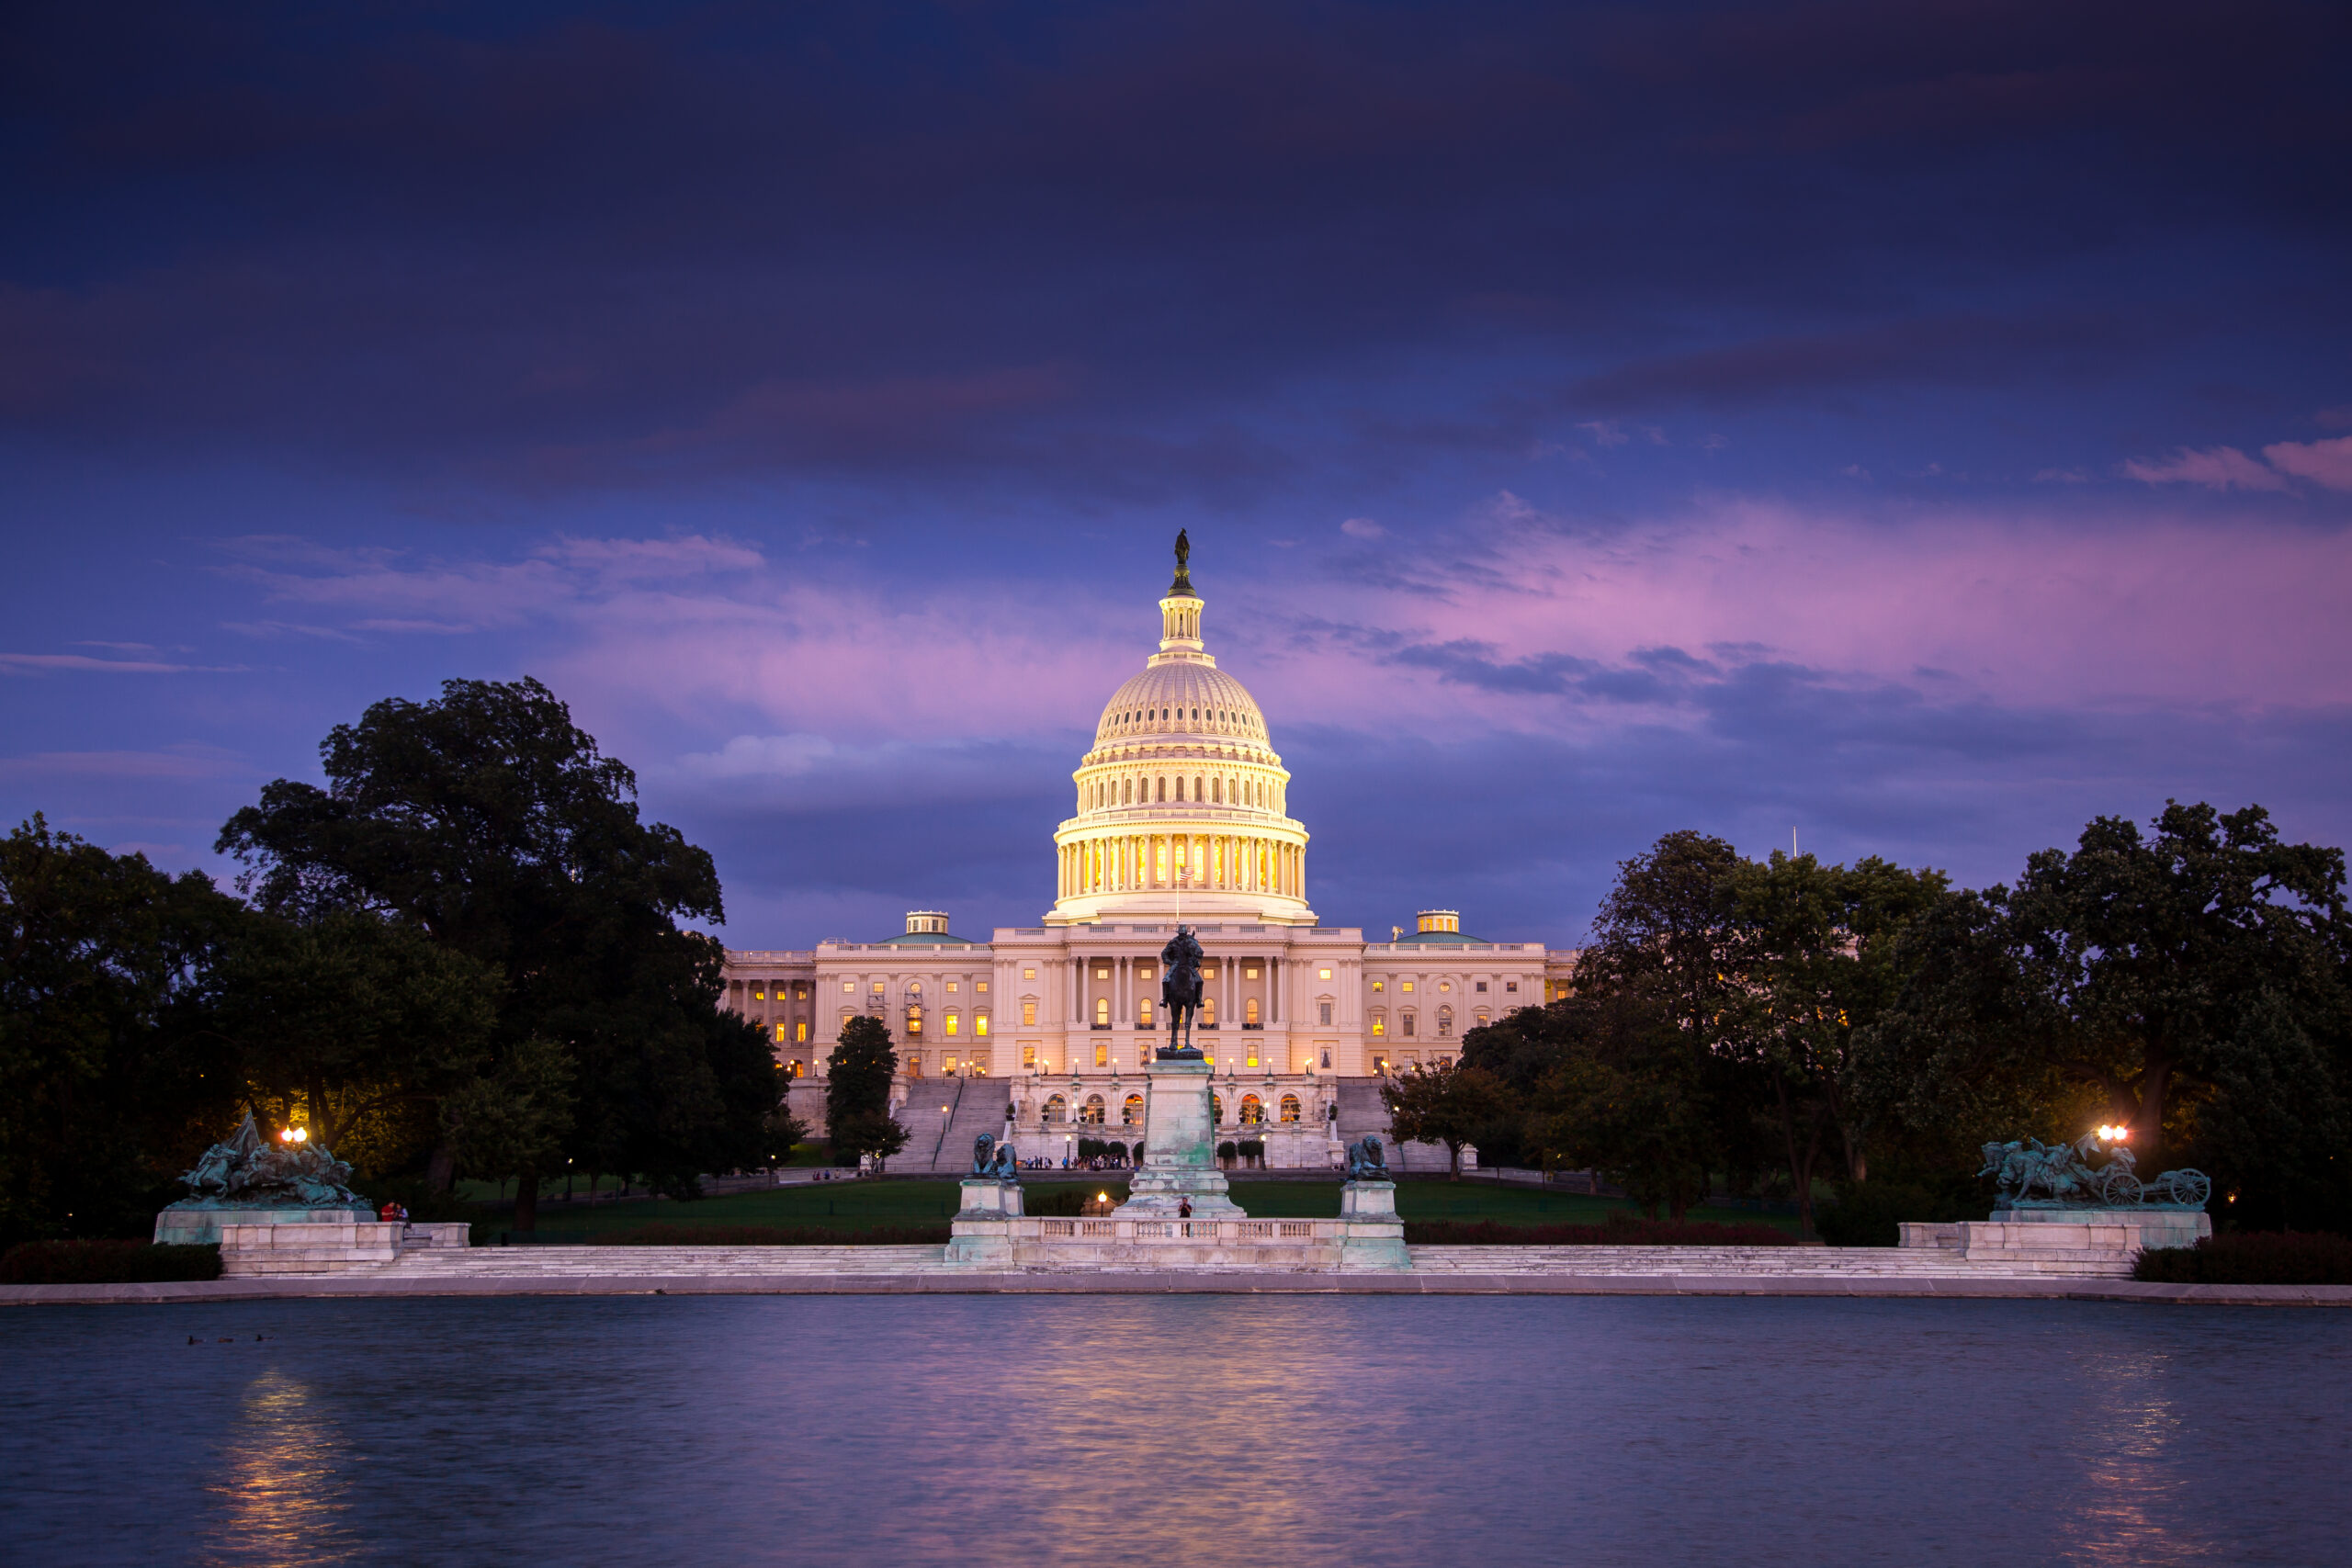 The U.S. Capitol building under a purple sky